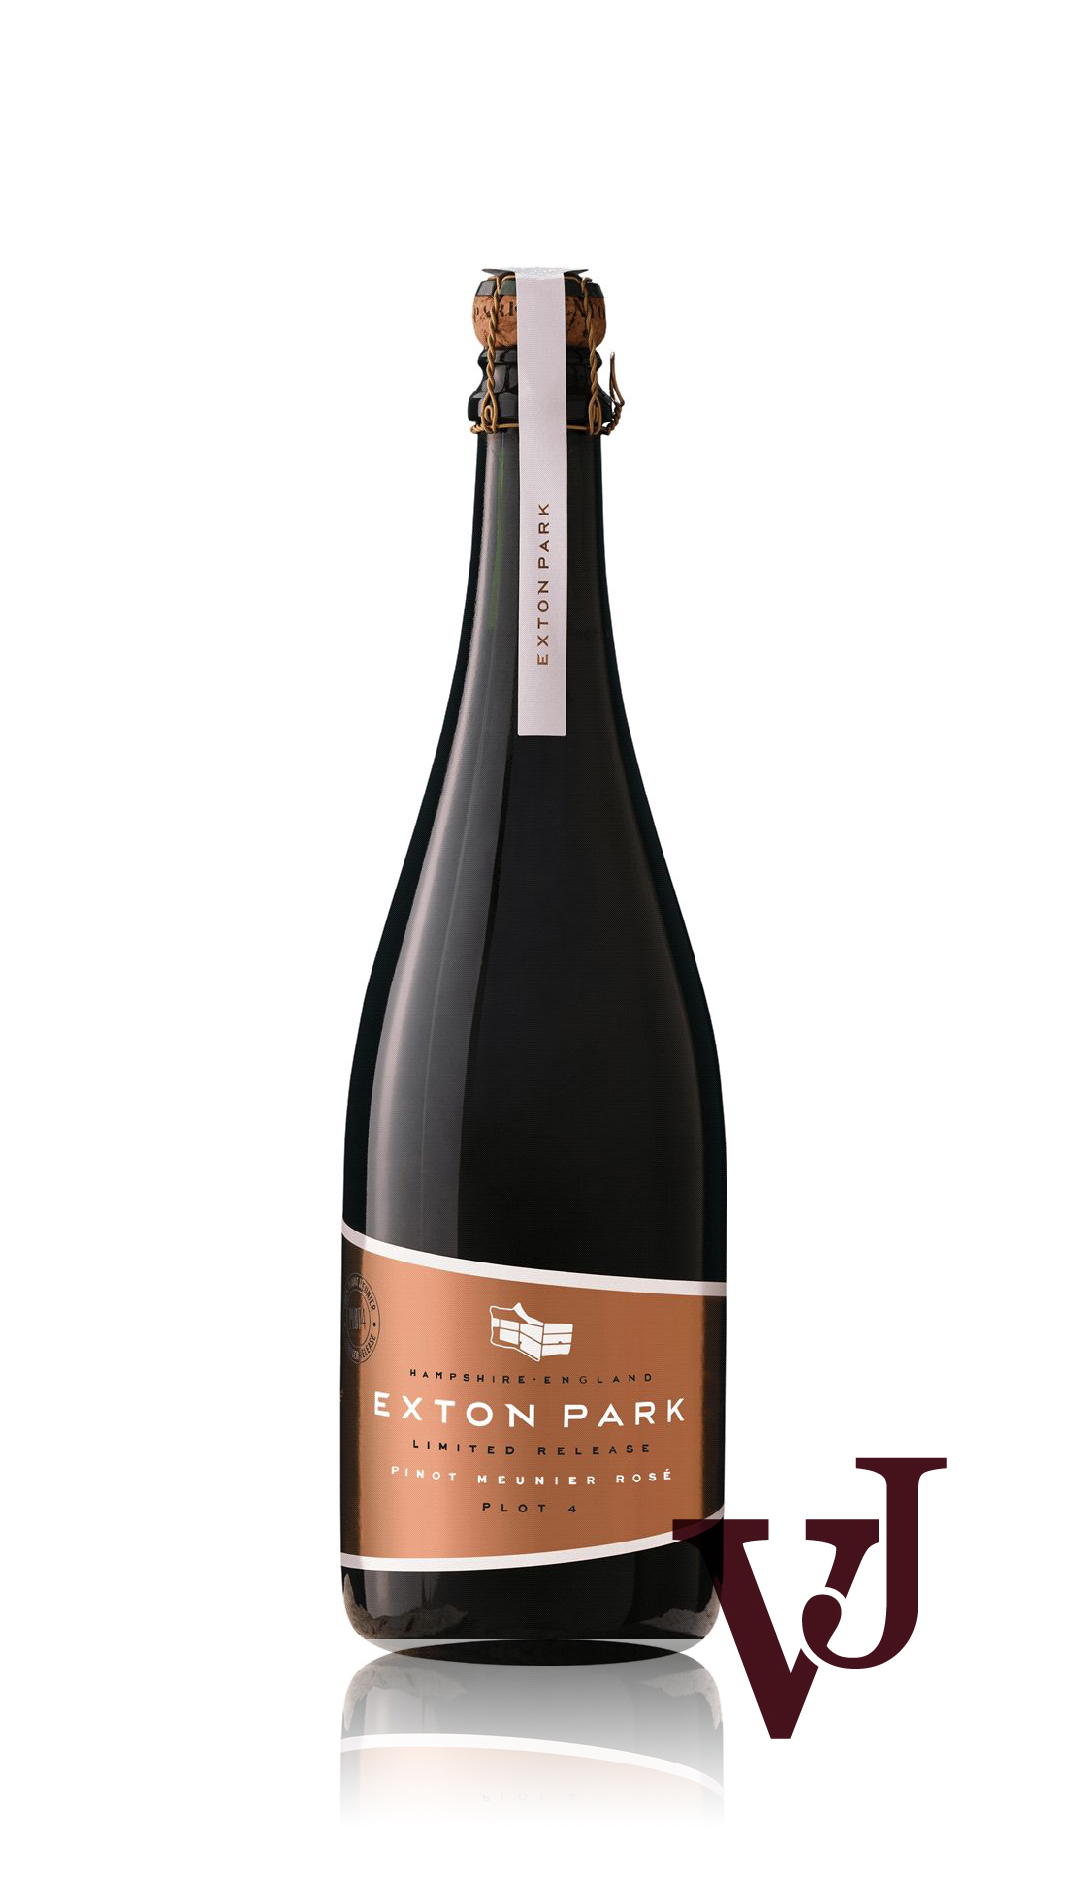 Mousserande Vin - Exton Park Plot 4 Pinot Meunier Rosé artikel nummer 5956901 från producenten Exton Park från området Storbritannien